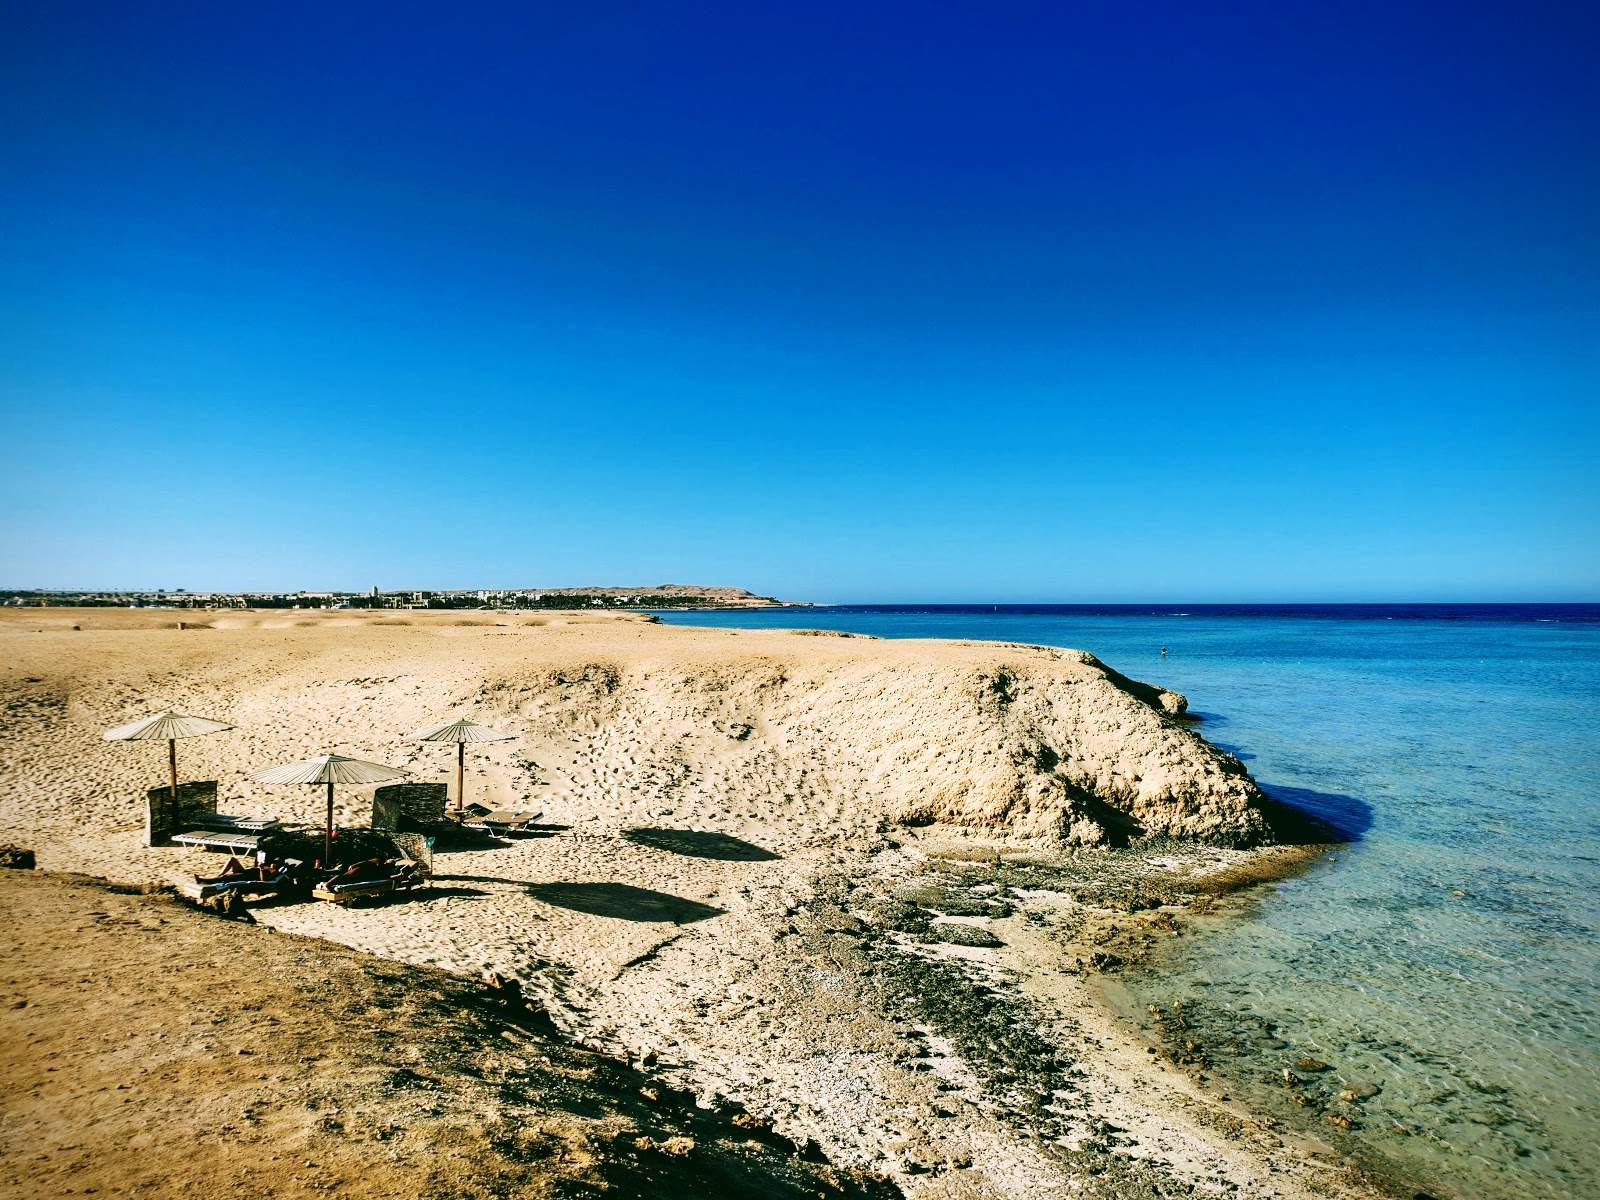 Fotografie cu Fayrouz Beach - locul popular printre cunoscătorii de relaxare